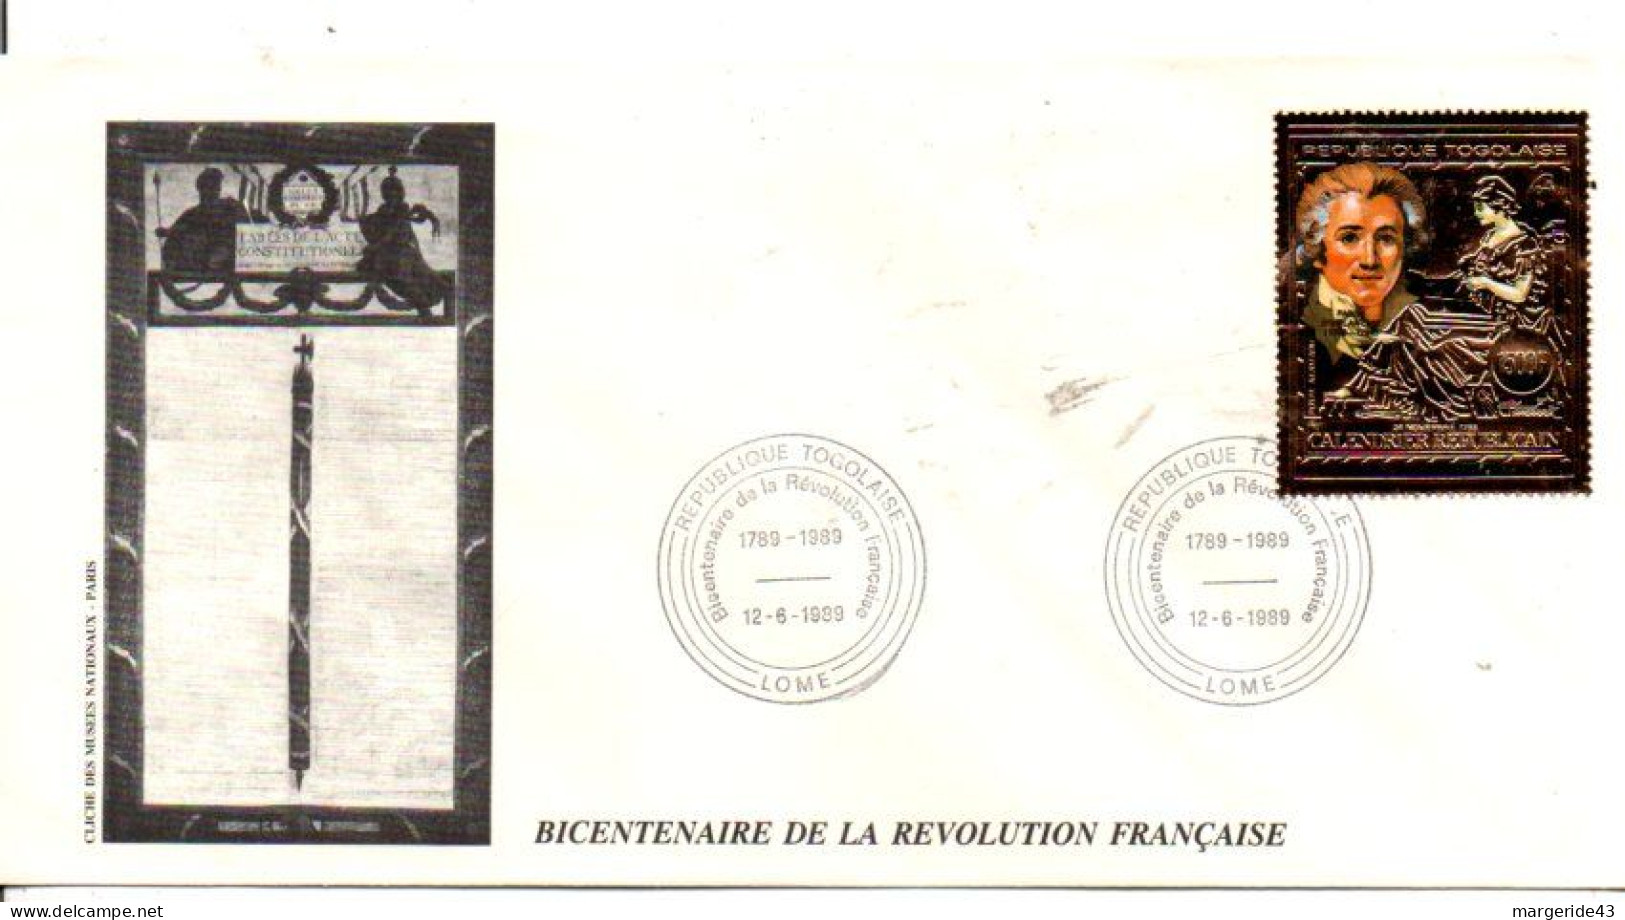 BICENTENAIRE REVOLUTION FRANCAISE 88 FDC ET LETTRES DANS UN CLASSEUR AVEC ETUI - 2 ème PARTIE